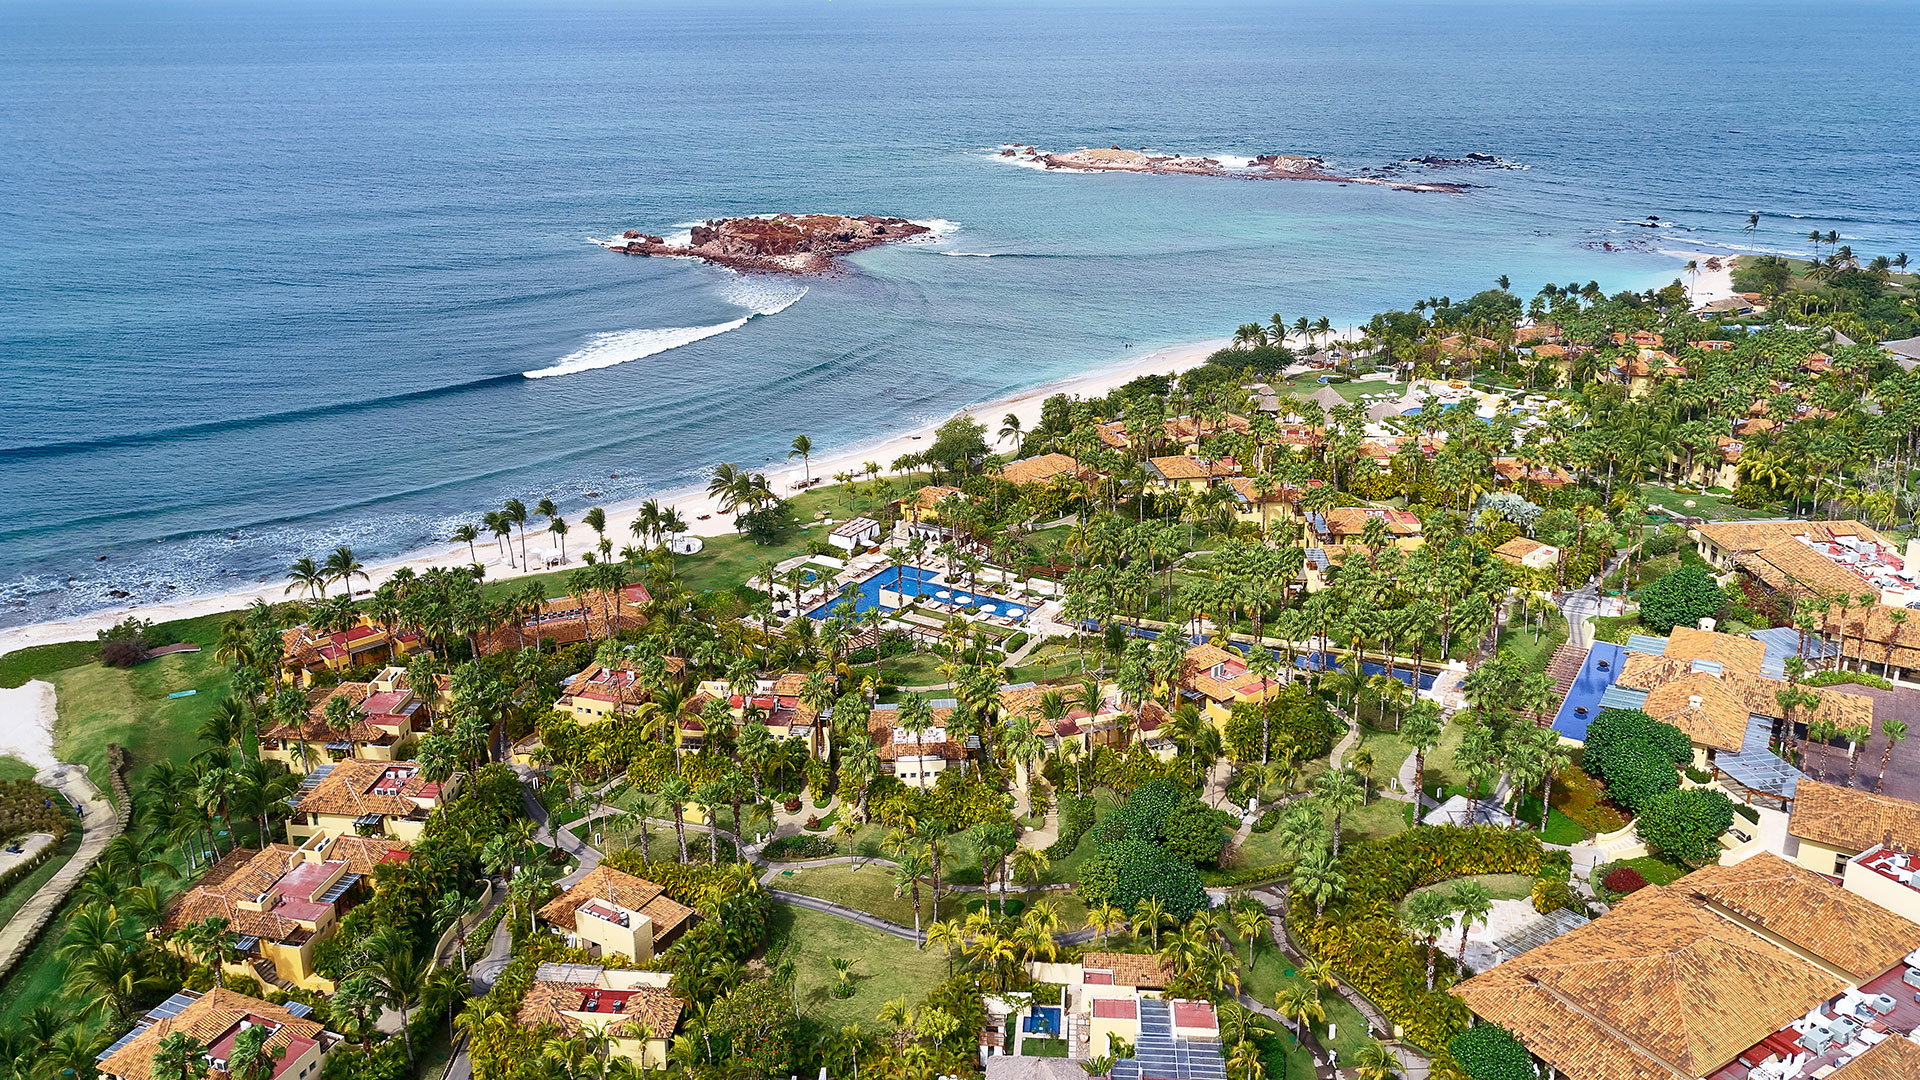 Vista aerea del hotel St. Regis Punta Mita Resort y su playa